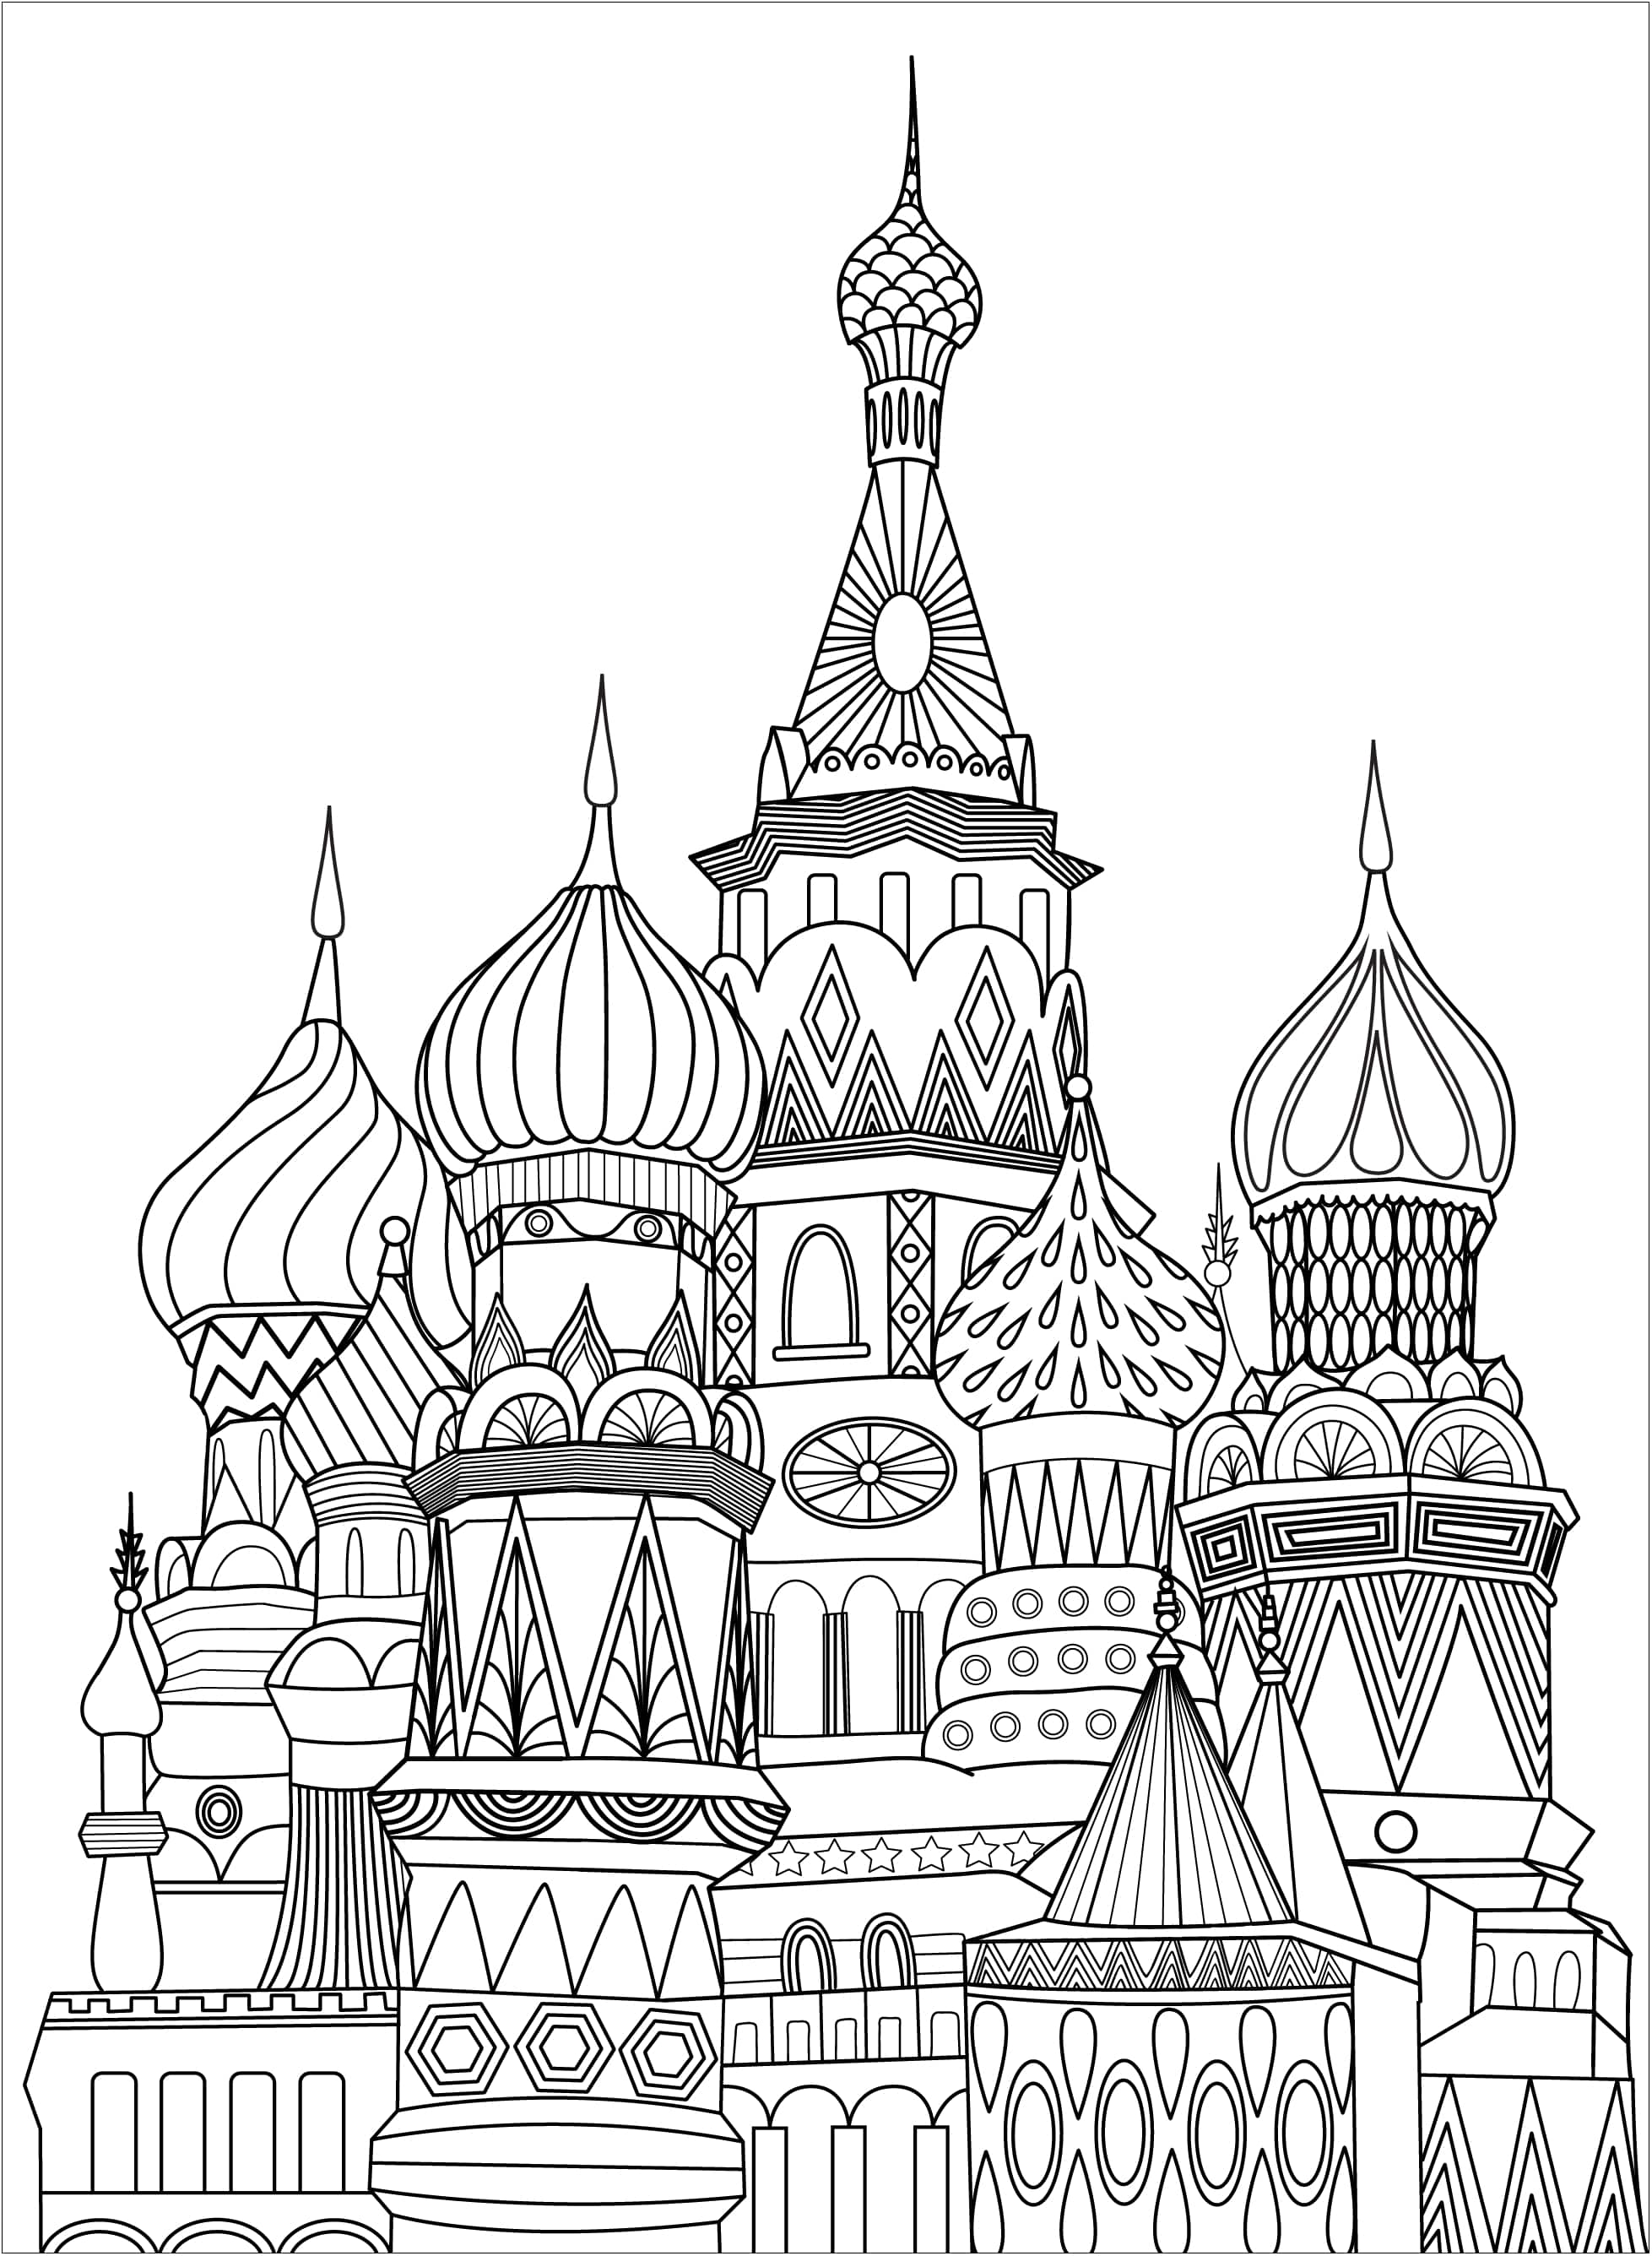 Página para colorear única que representa la Plaza Roja de Moscú. La Plaza Roja es una plaza abierta de Moscú contigua a la fortaleza histórica y centro de gobierno conocido como el Kremlin